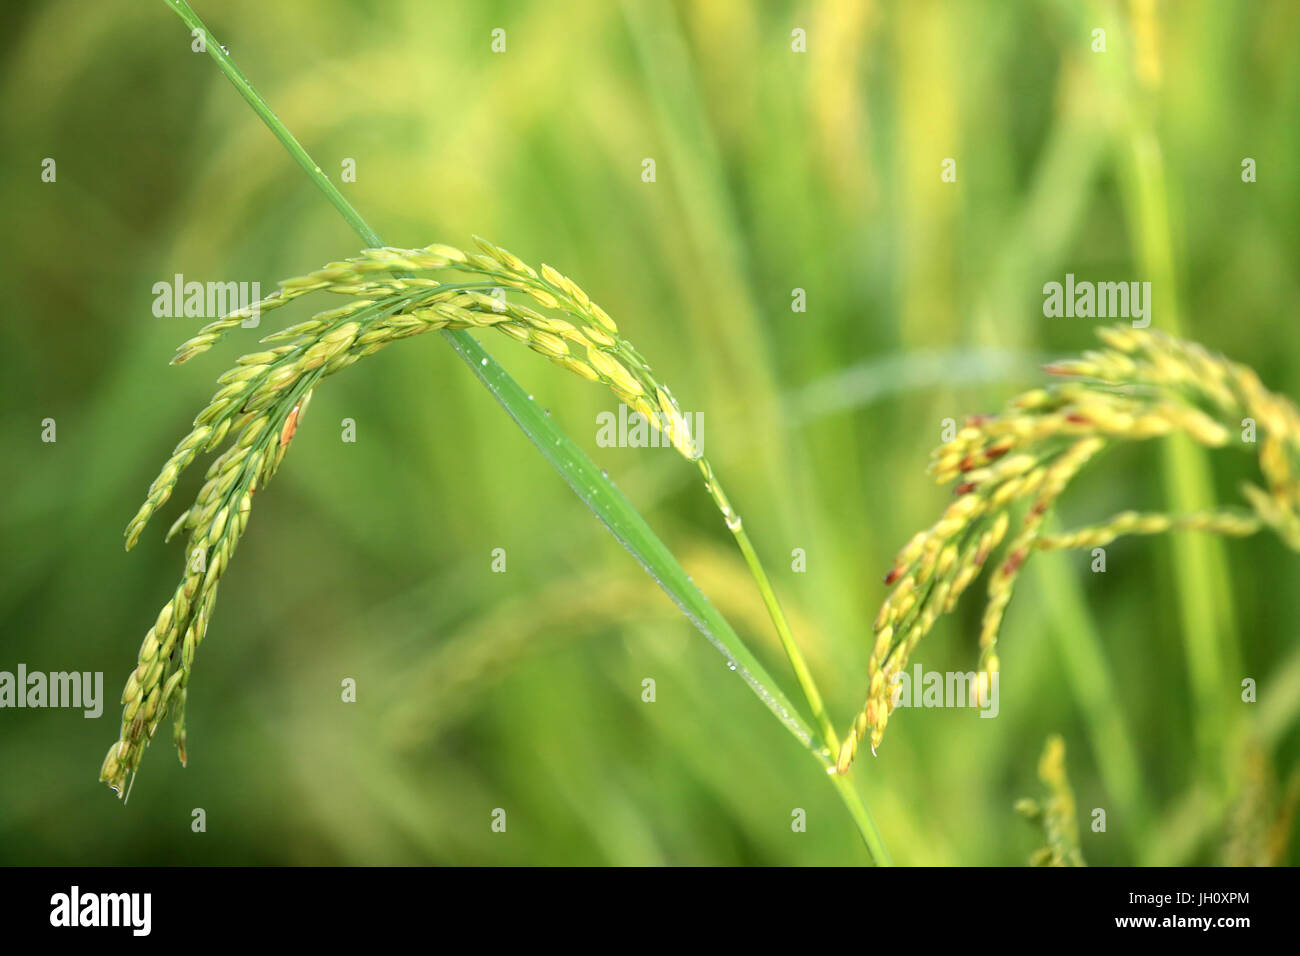 Landwirtschaft. Nahaufnahme der Reisanbau in einem Reisfeld. Laos. Stockfoto